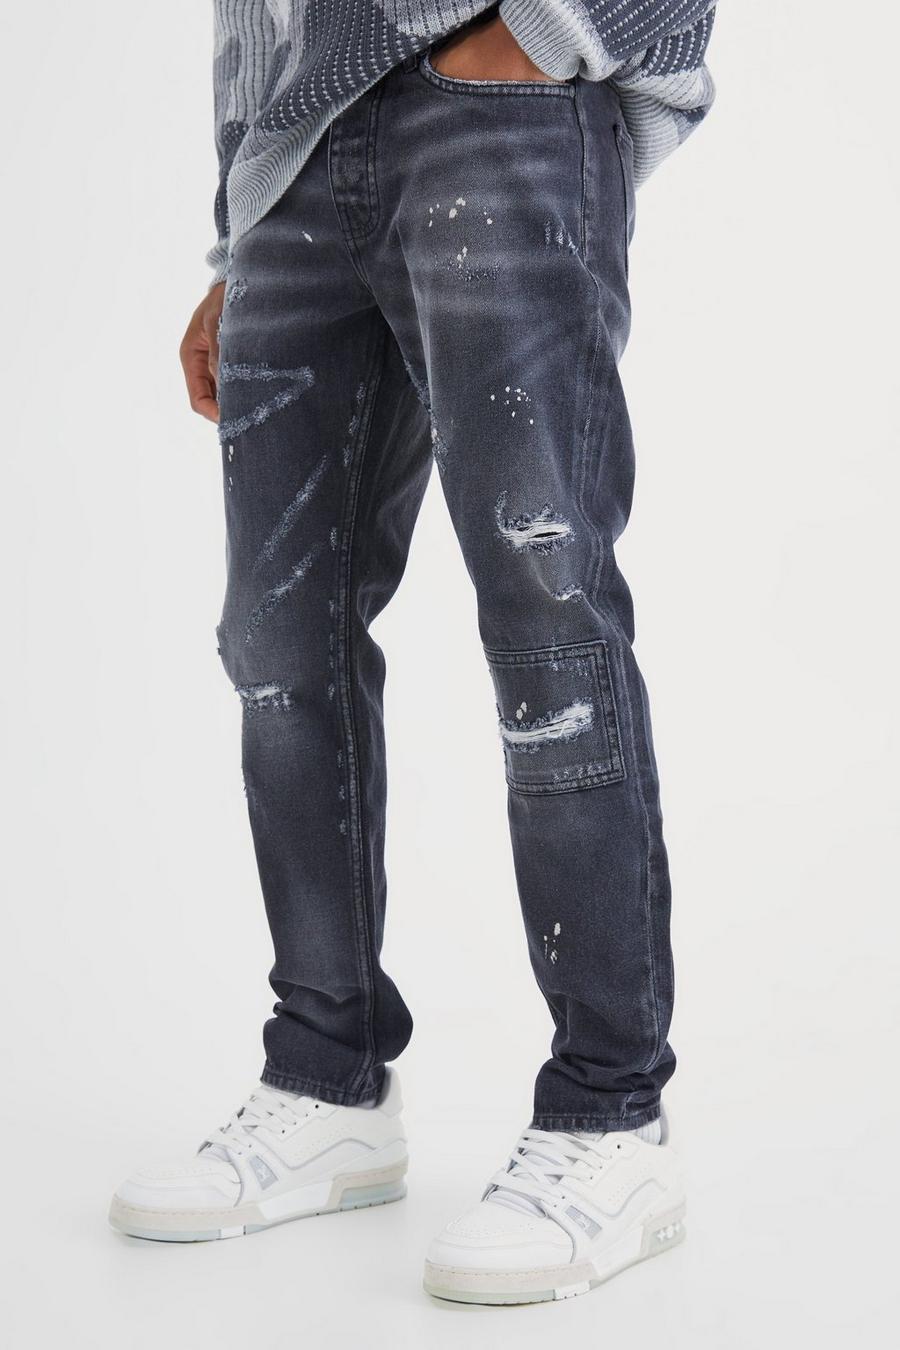 Jeans Slim Fit in denim rigido nero con strappi e dettagli dipinti all over, Washed black